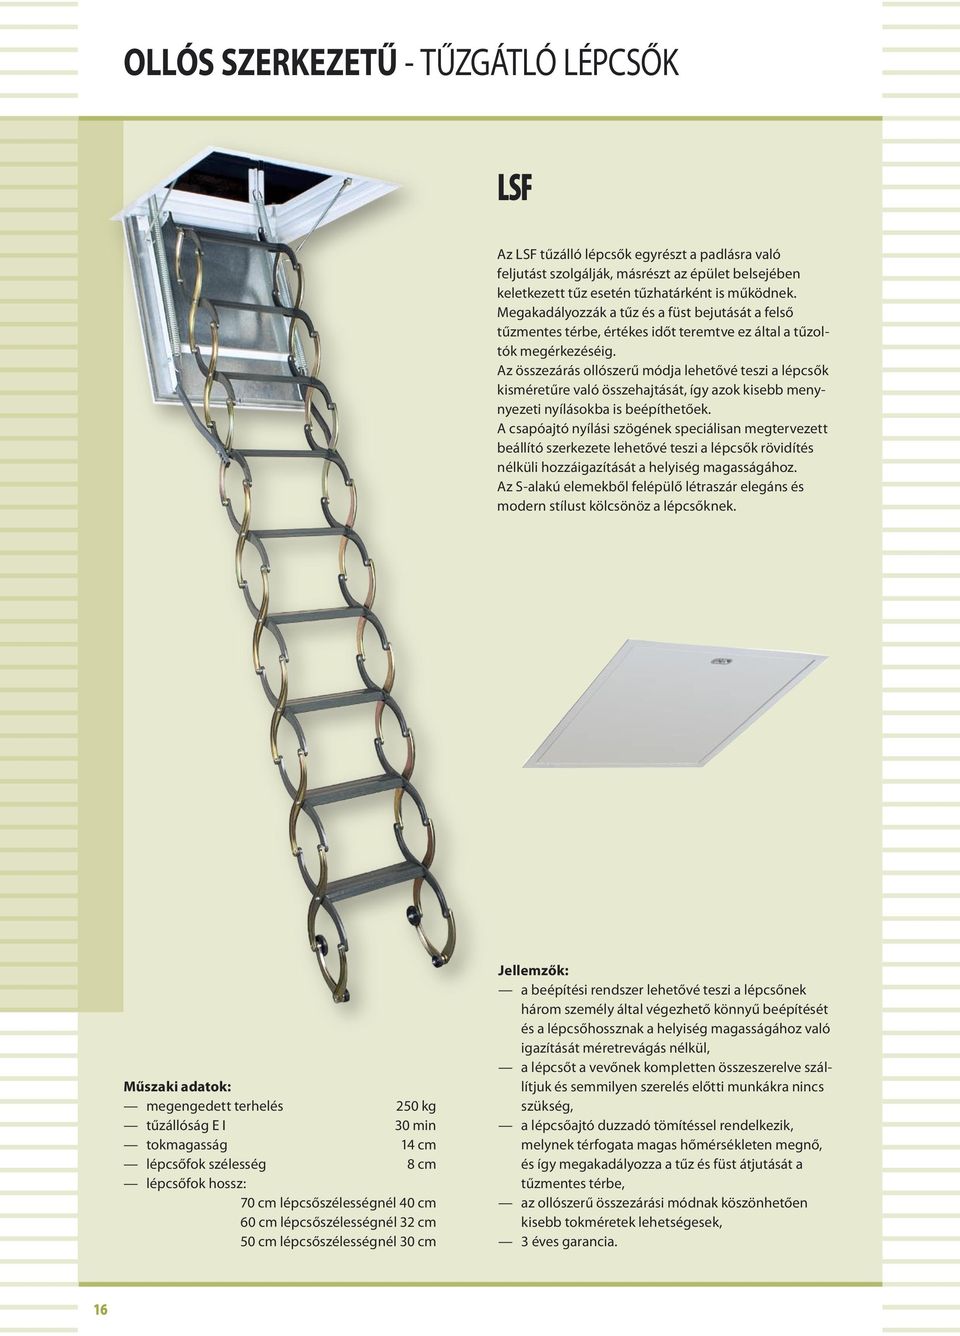 Az összezárás ollószerű módja lehetővé teszi a lépcsők kisméretűre való összehajtását, így azok kisebb menynyezeti nyílásokba is beépíthetőek.